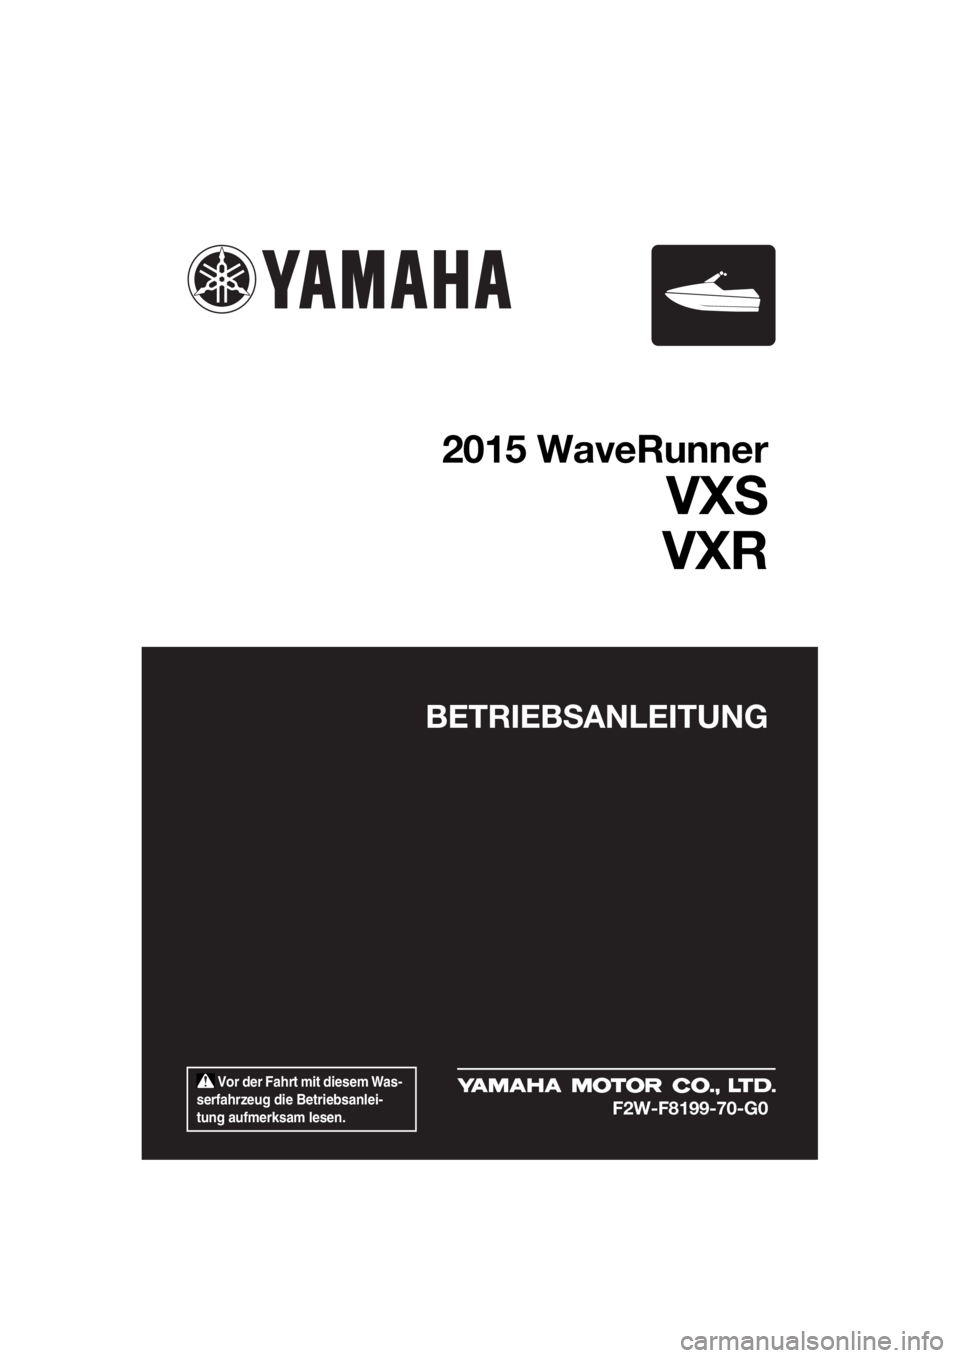 YAMAHA VXS 2015  Betriebsanleitungen (in German)  Vor der Fahrt mit diesem Was-
serfahrzeug die Betriebsanlei-
tung aufmerksam lesen.
BETRIEBSANLEITUNG
2015 WaveRunner
VXS
VXR
F2W-F8199-70-G0
UF2W70G0.book  Page 1  Tuesday, December 8, 2015  1:18 PM